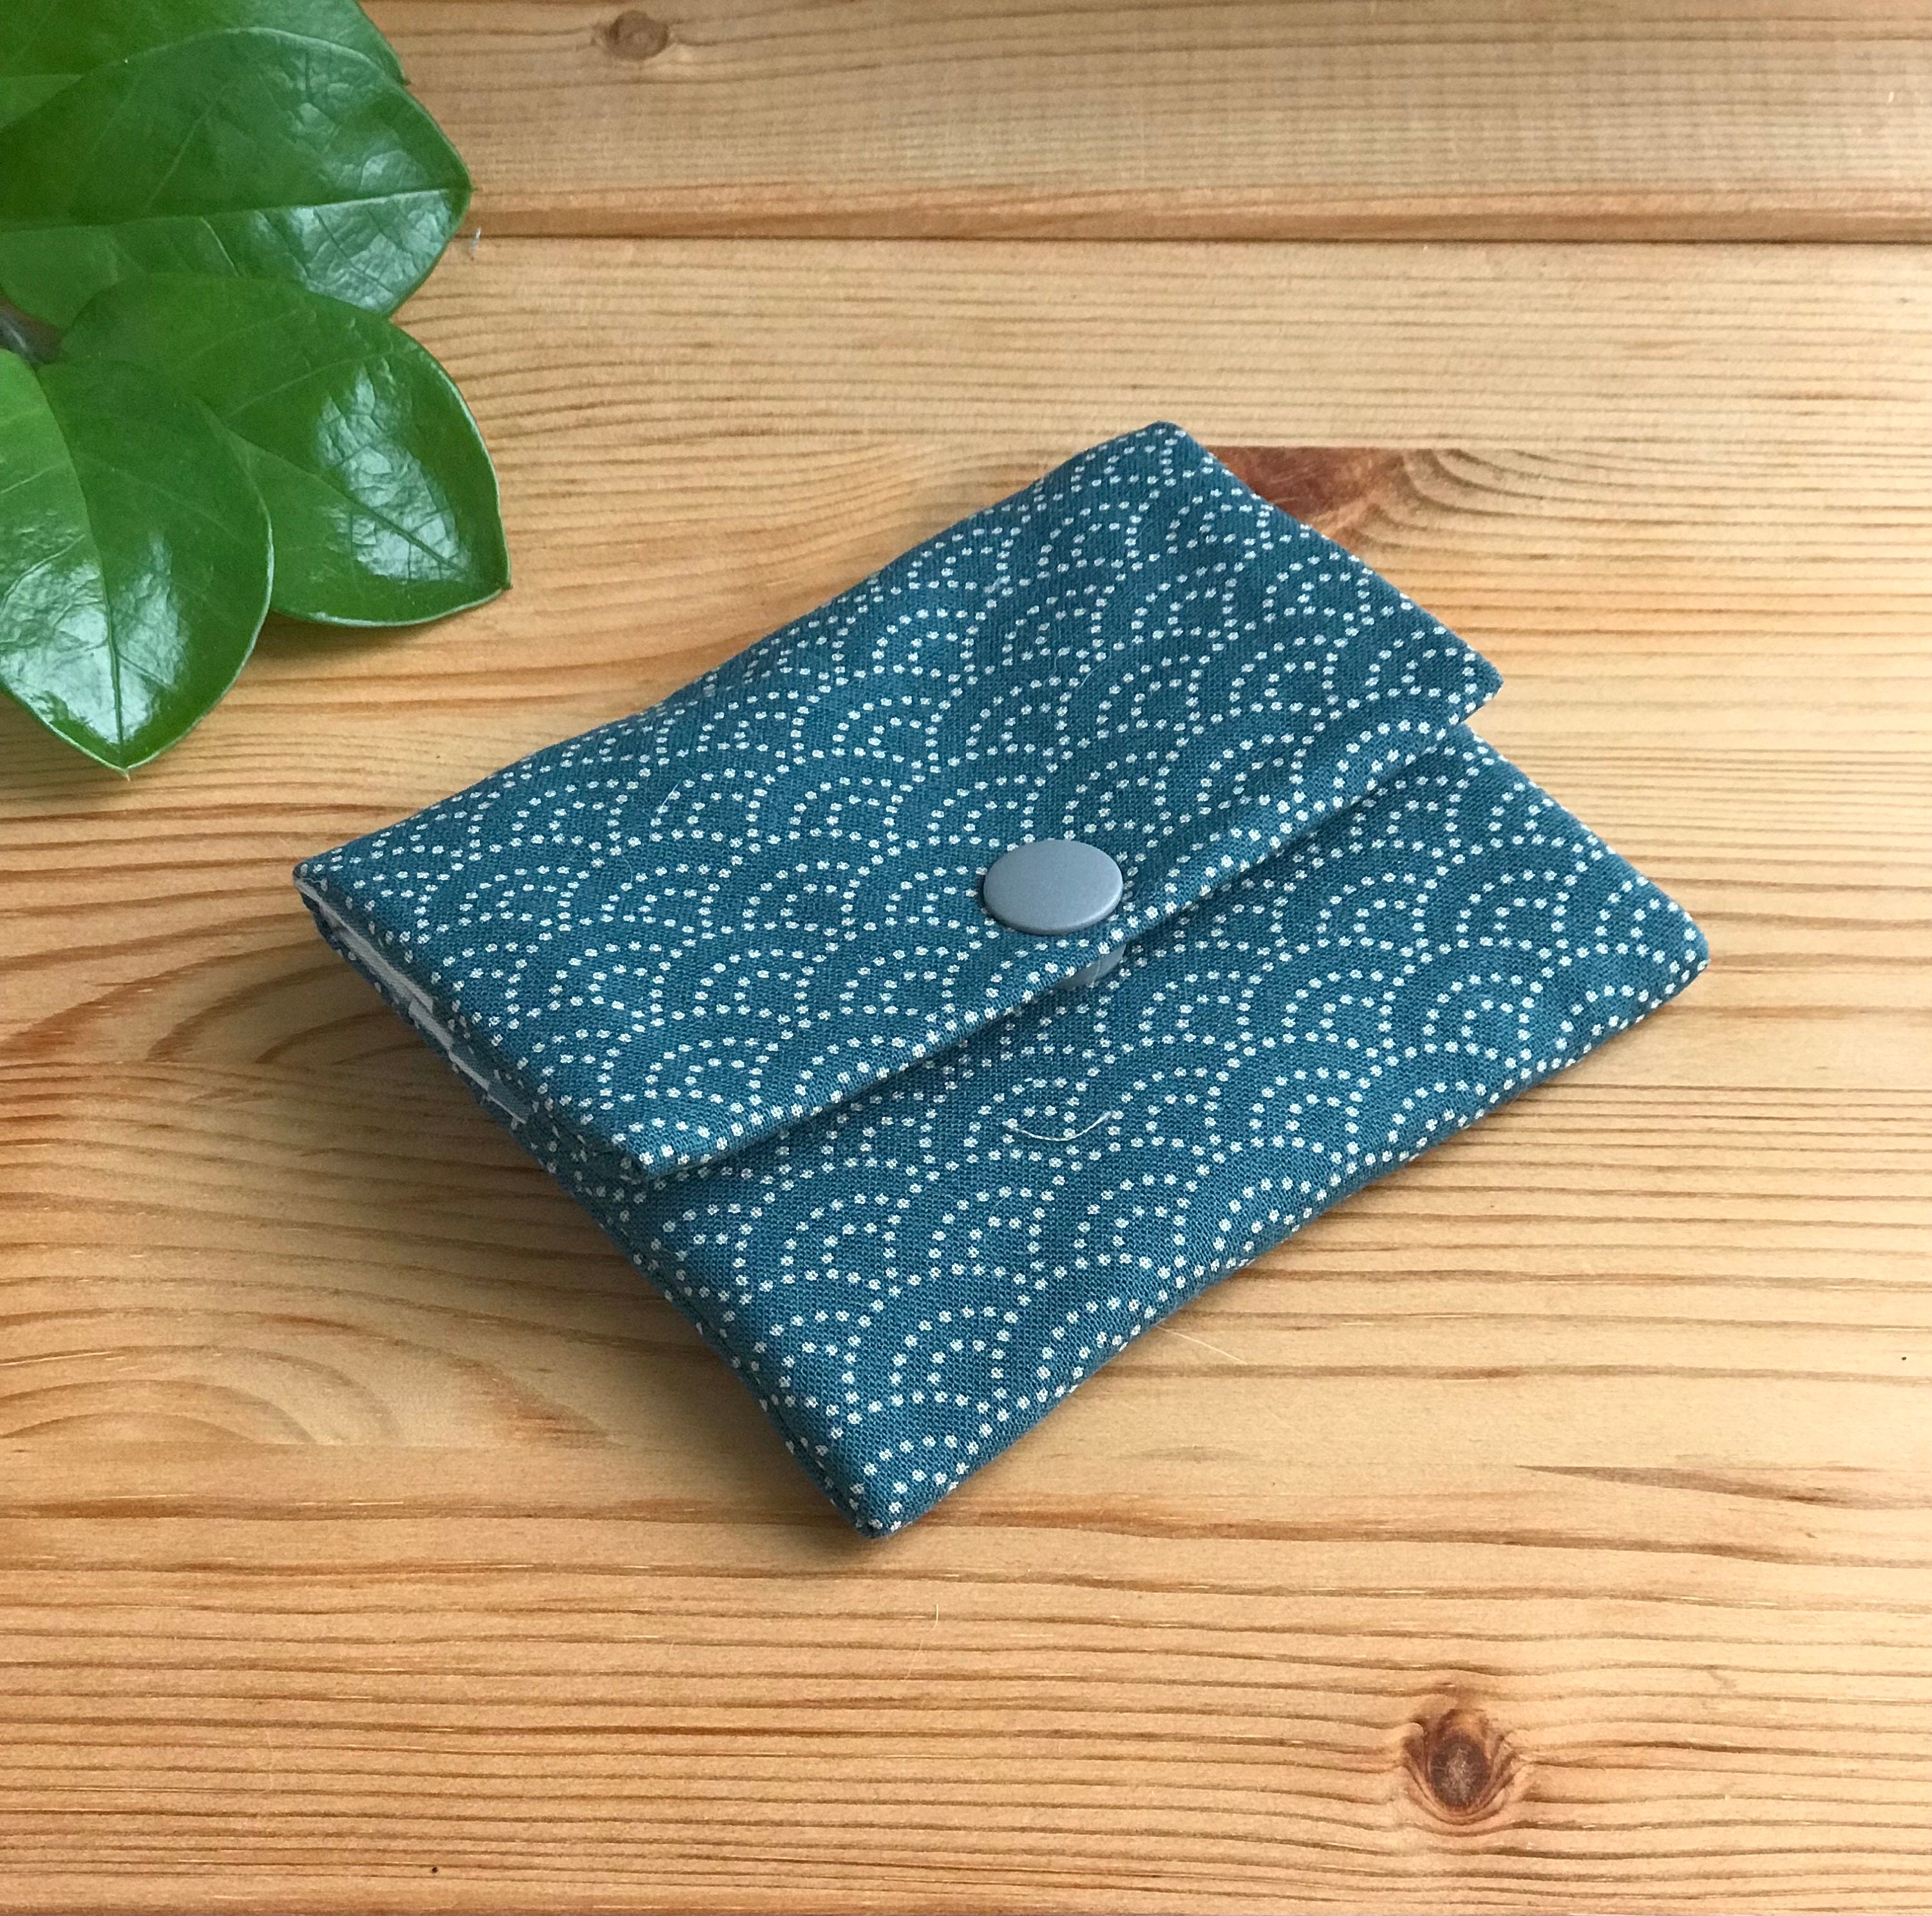 Kimono fabric wallet – Kimono House NYC